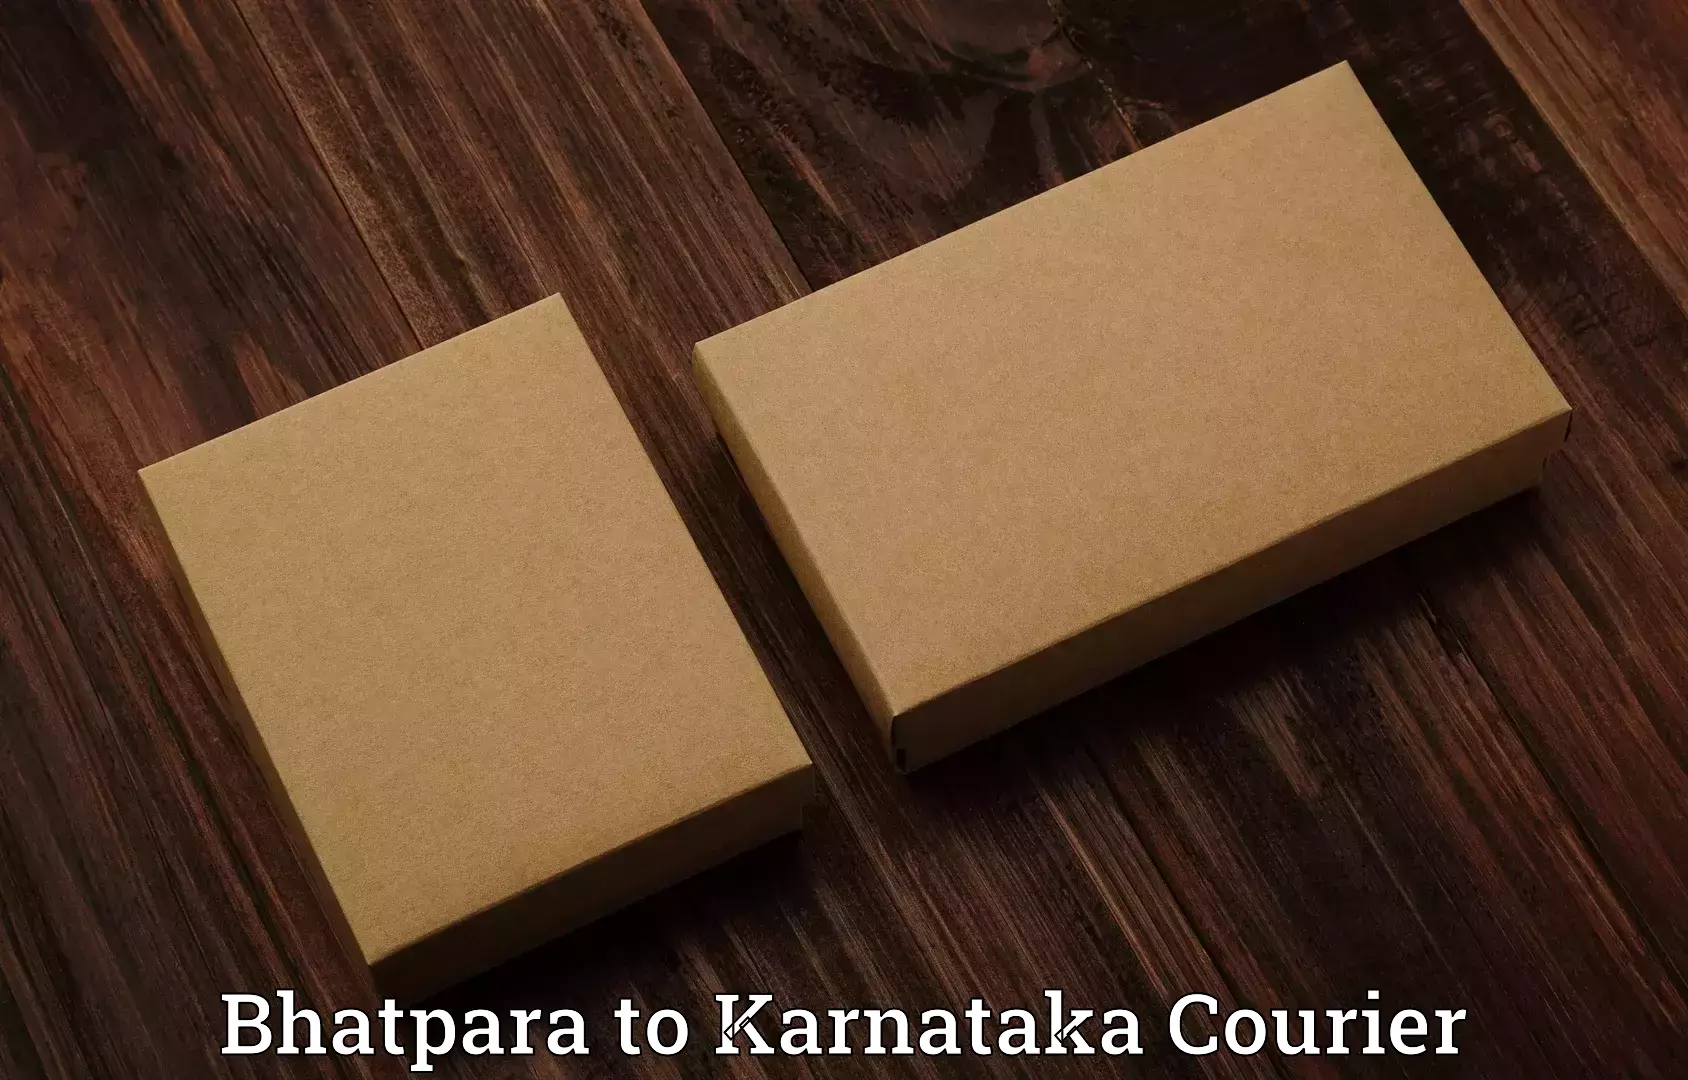 Baggage transport logistics Bhatpara to Karnataka